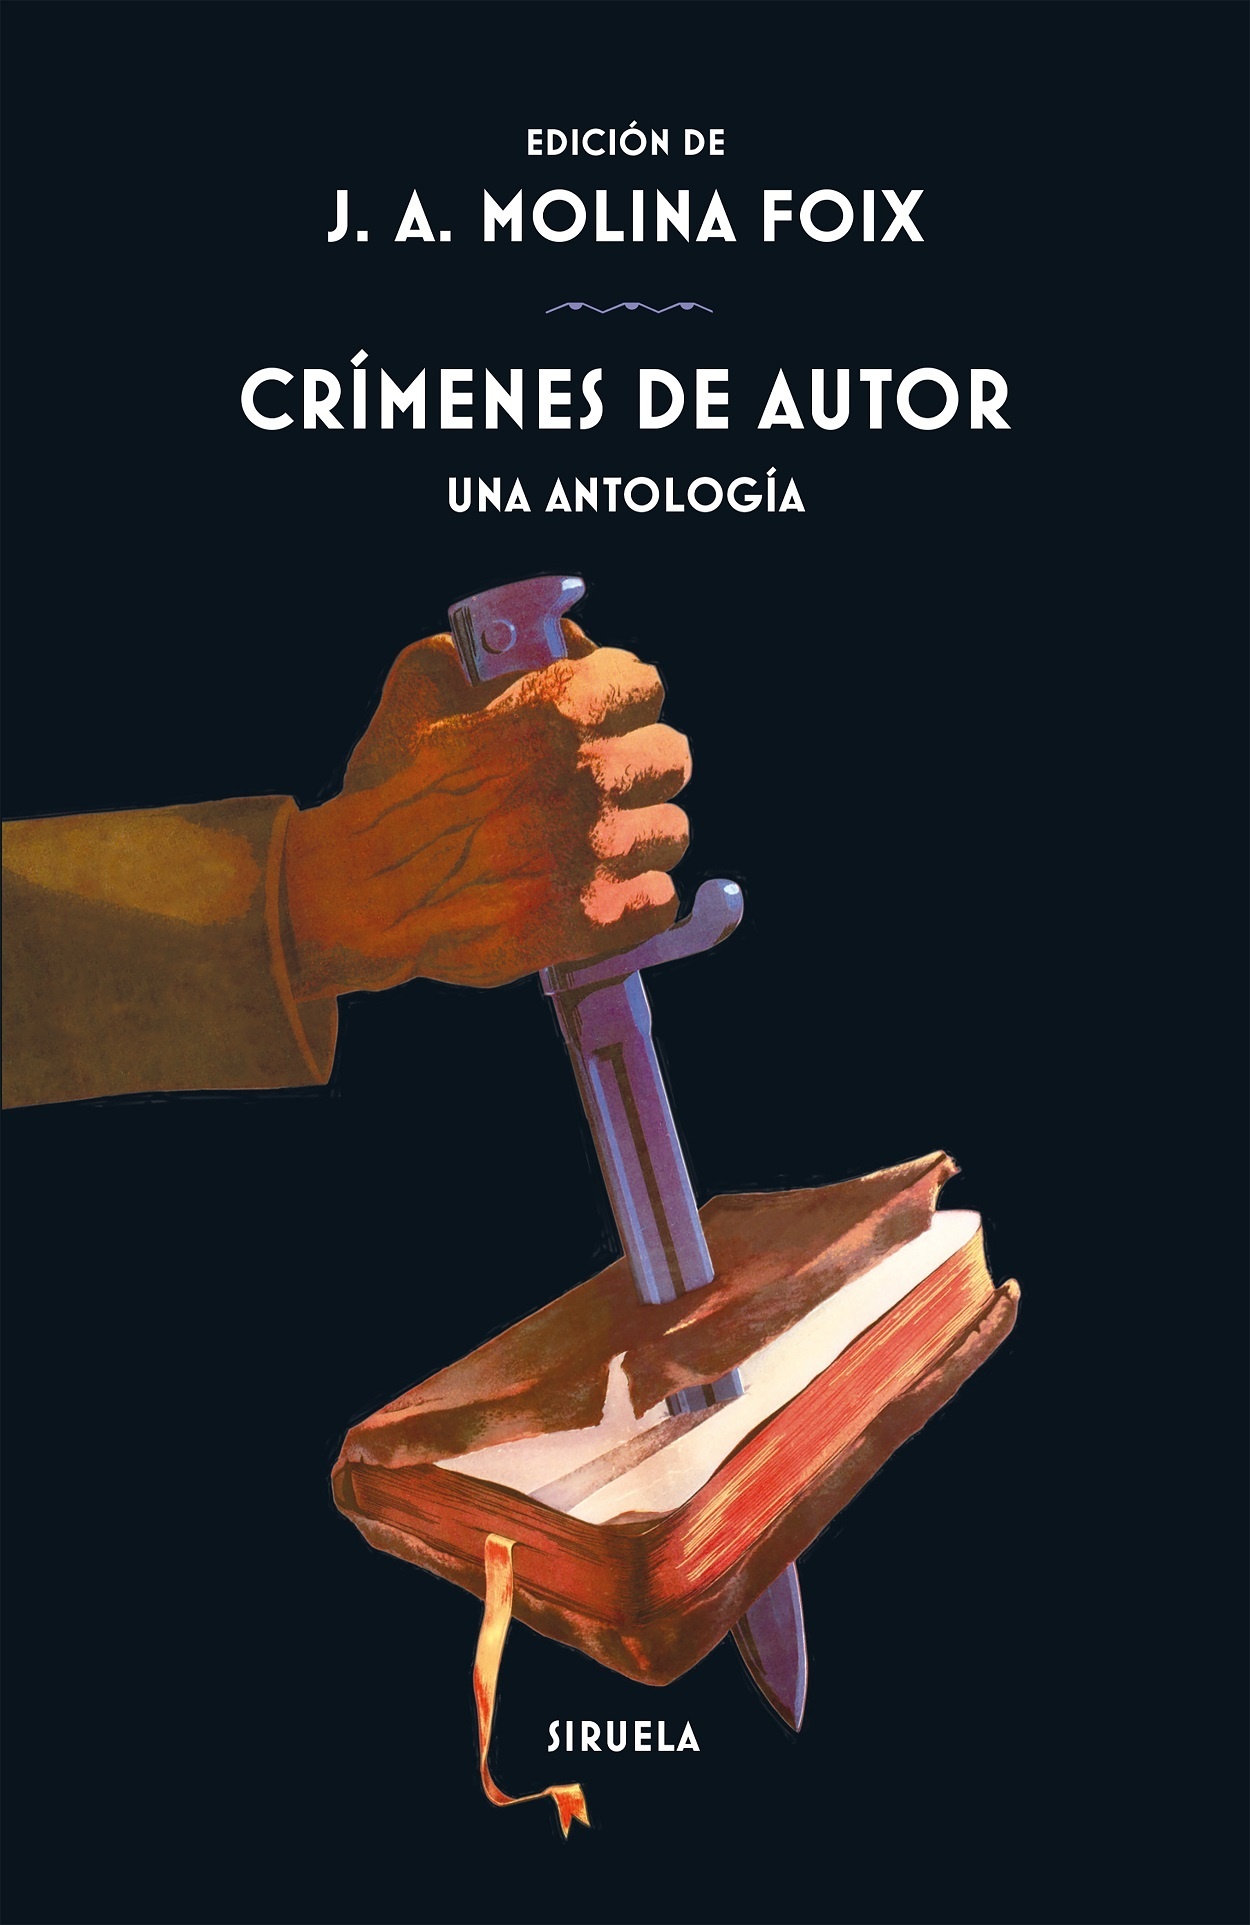 Crímenes de autor "Una antología"